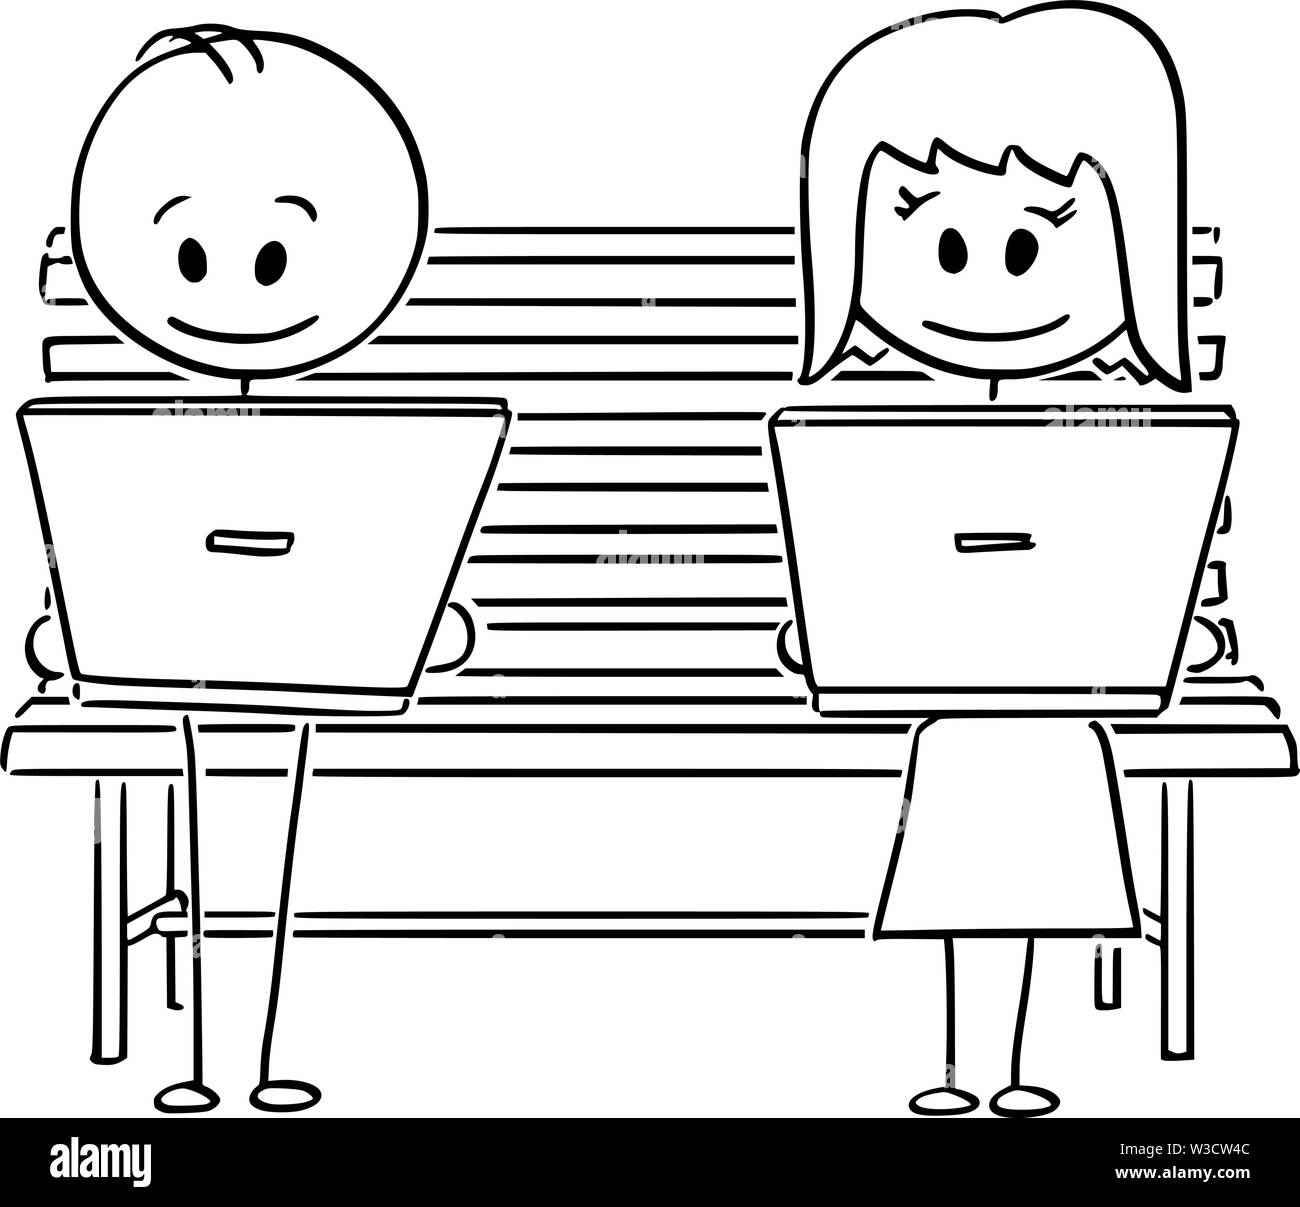 Vektor cartoon Strichmännchen Zeichnen konzeptionelle Darstellung der Paare von Mann und Frau mit Social Media oder Arbeit am Computer, beim Sitzen auf der Parkbank. Stock Vektor